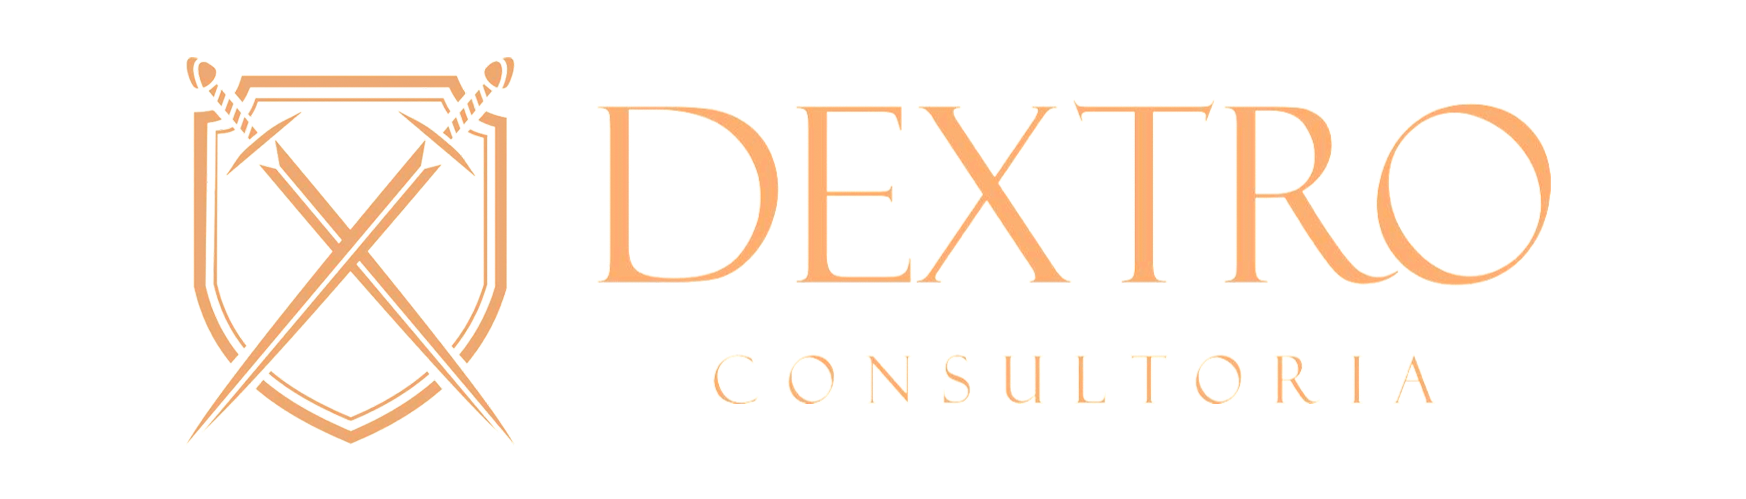 Dextro Consultoria